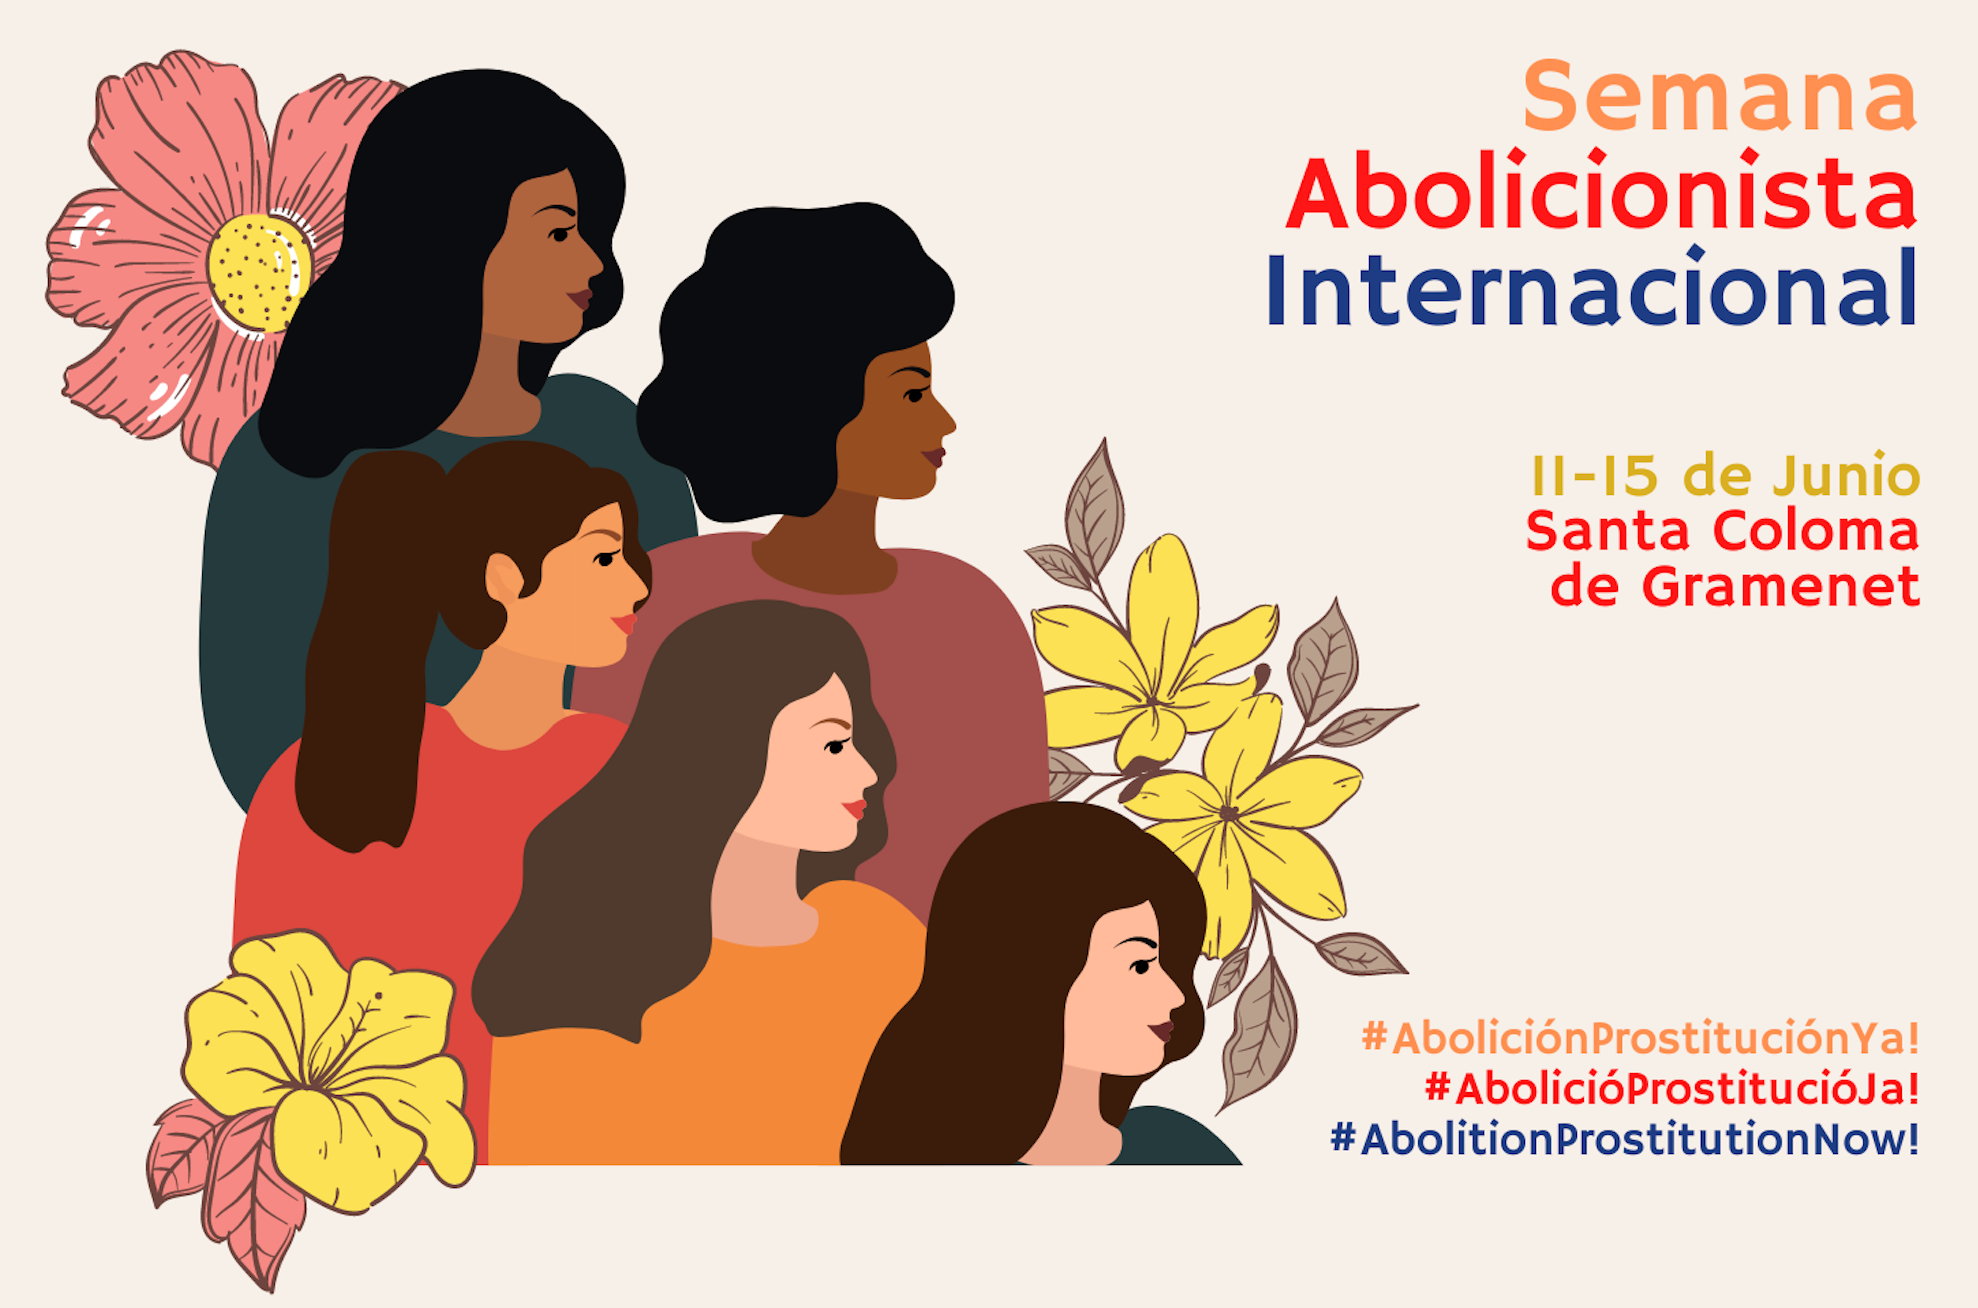 Líderes y activistas mundiales se reúnen en España para la II Semana Internacional Abolicionista